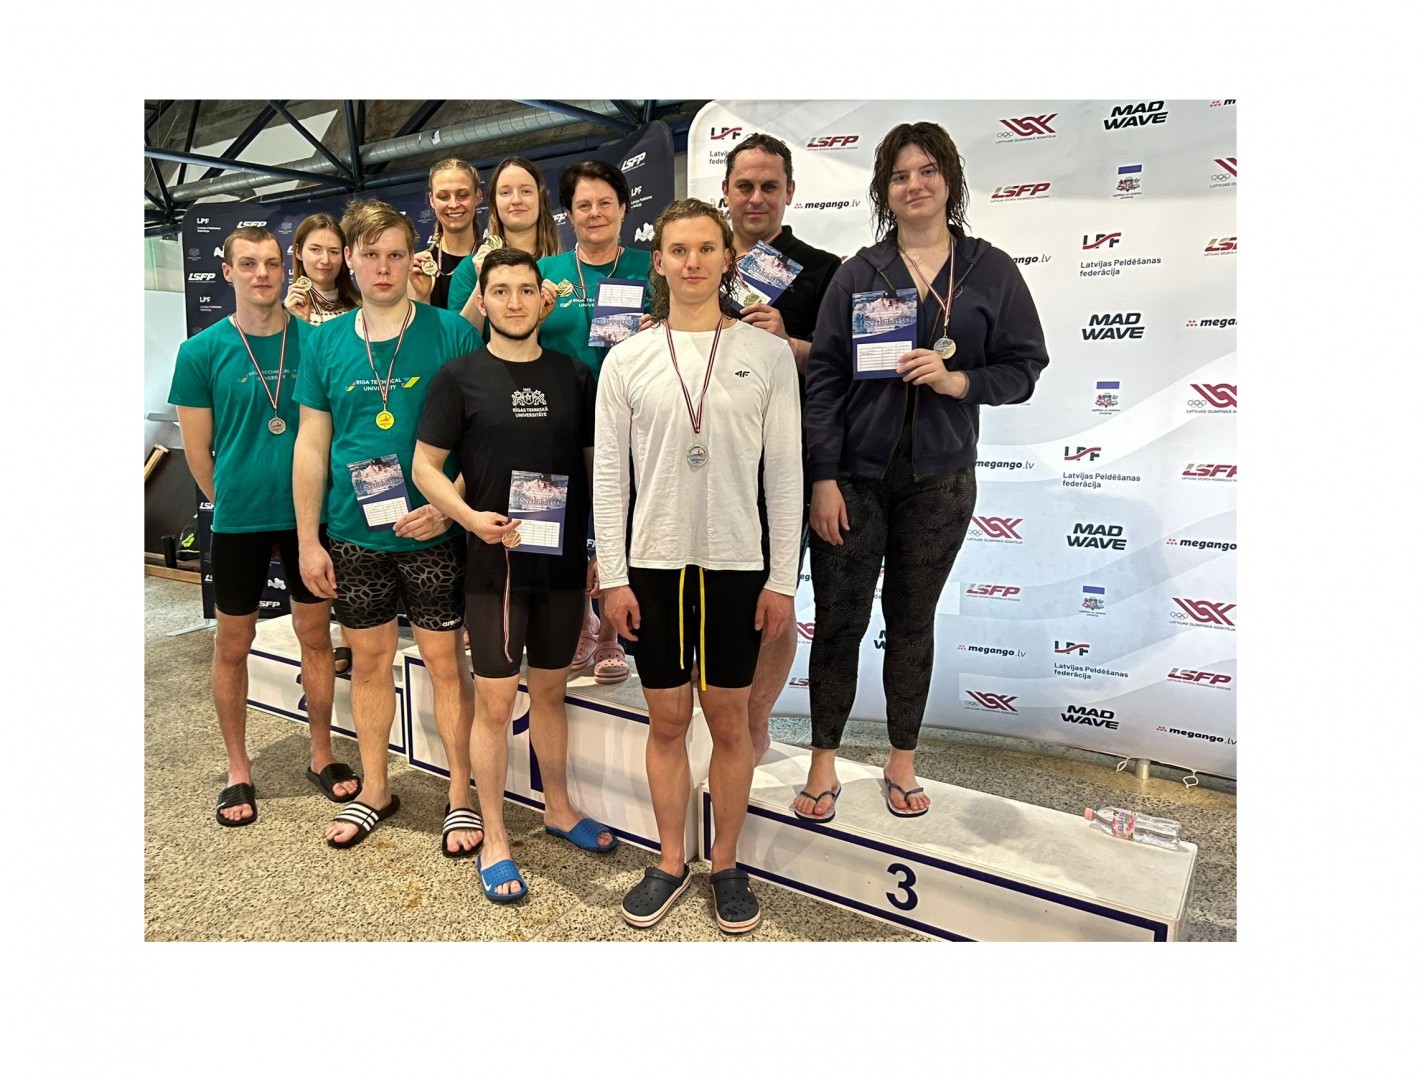 Veltot peldējumu RTU 160. jubilejā, universitātes sportisti sasniedz ievērojamus rezultātus Latvijas Atklātajā čempionātā peldēšanā vecmeistariem